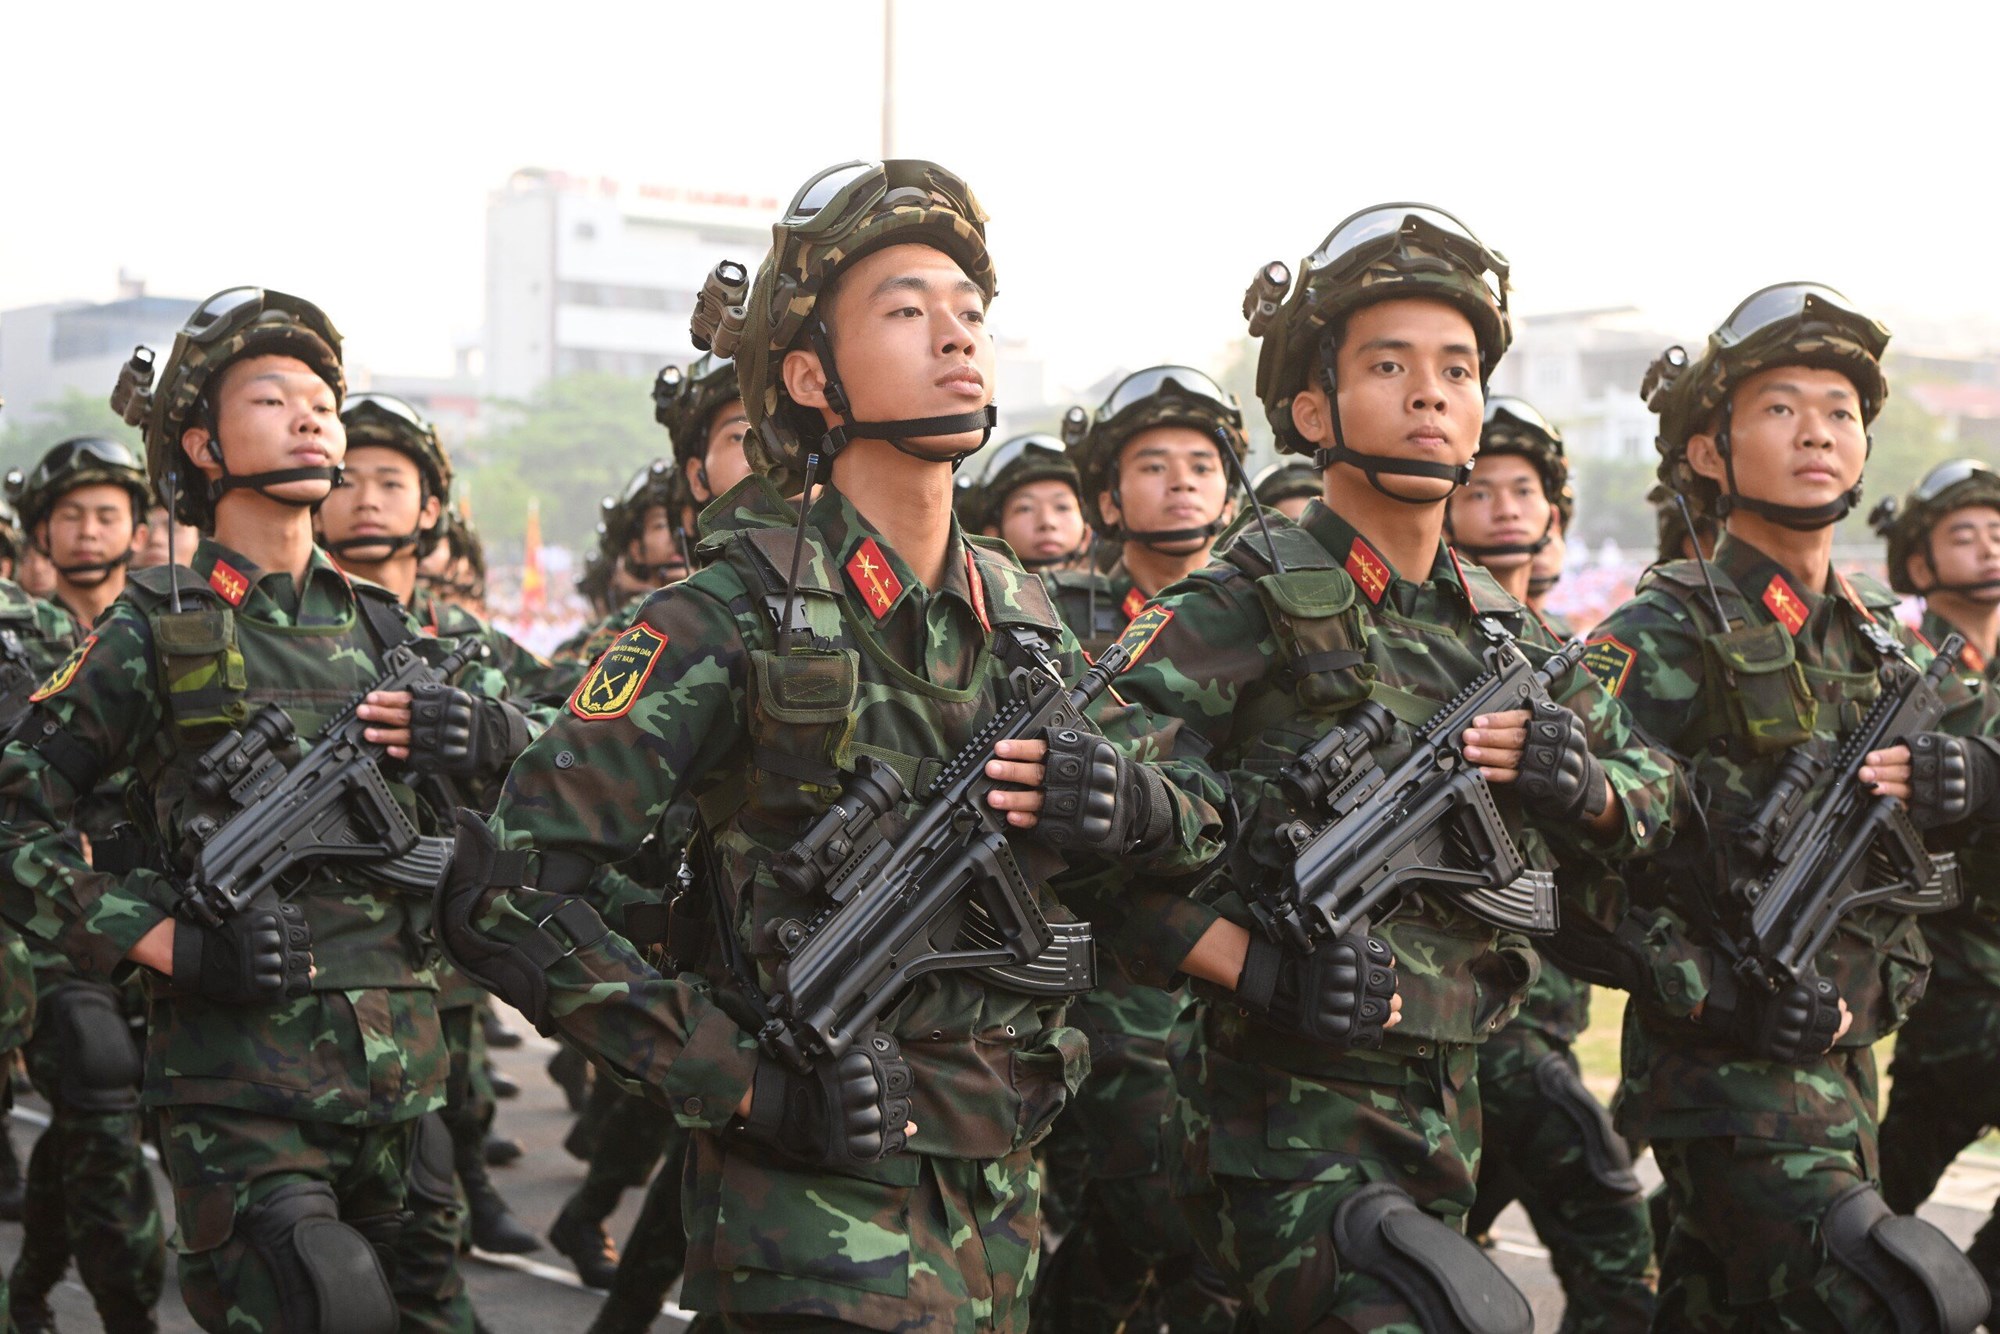 Hợp luyện các lực lượng diễu binh, diễu hành kỷ niệm 70 năm Chiến thắng Điện Biên Phủ - ảnh 6